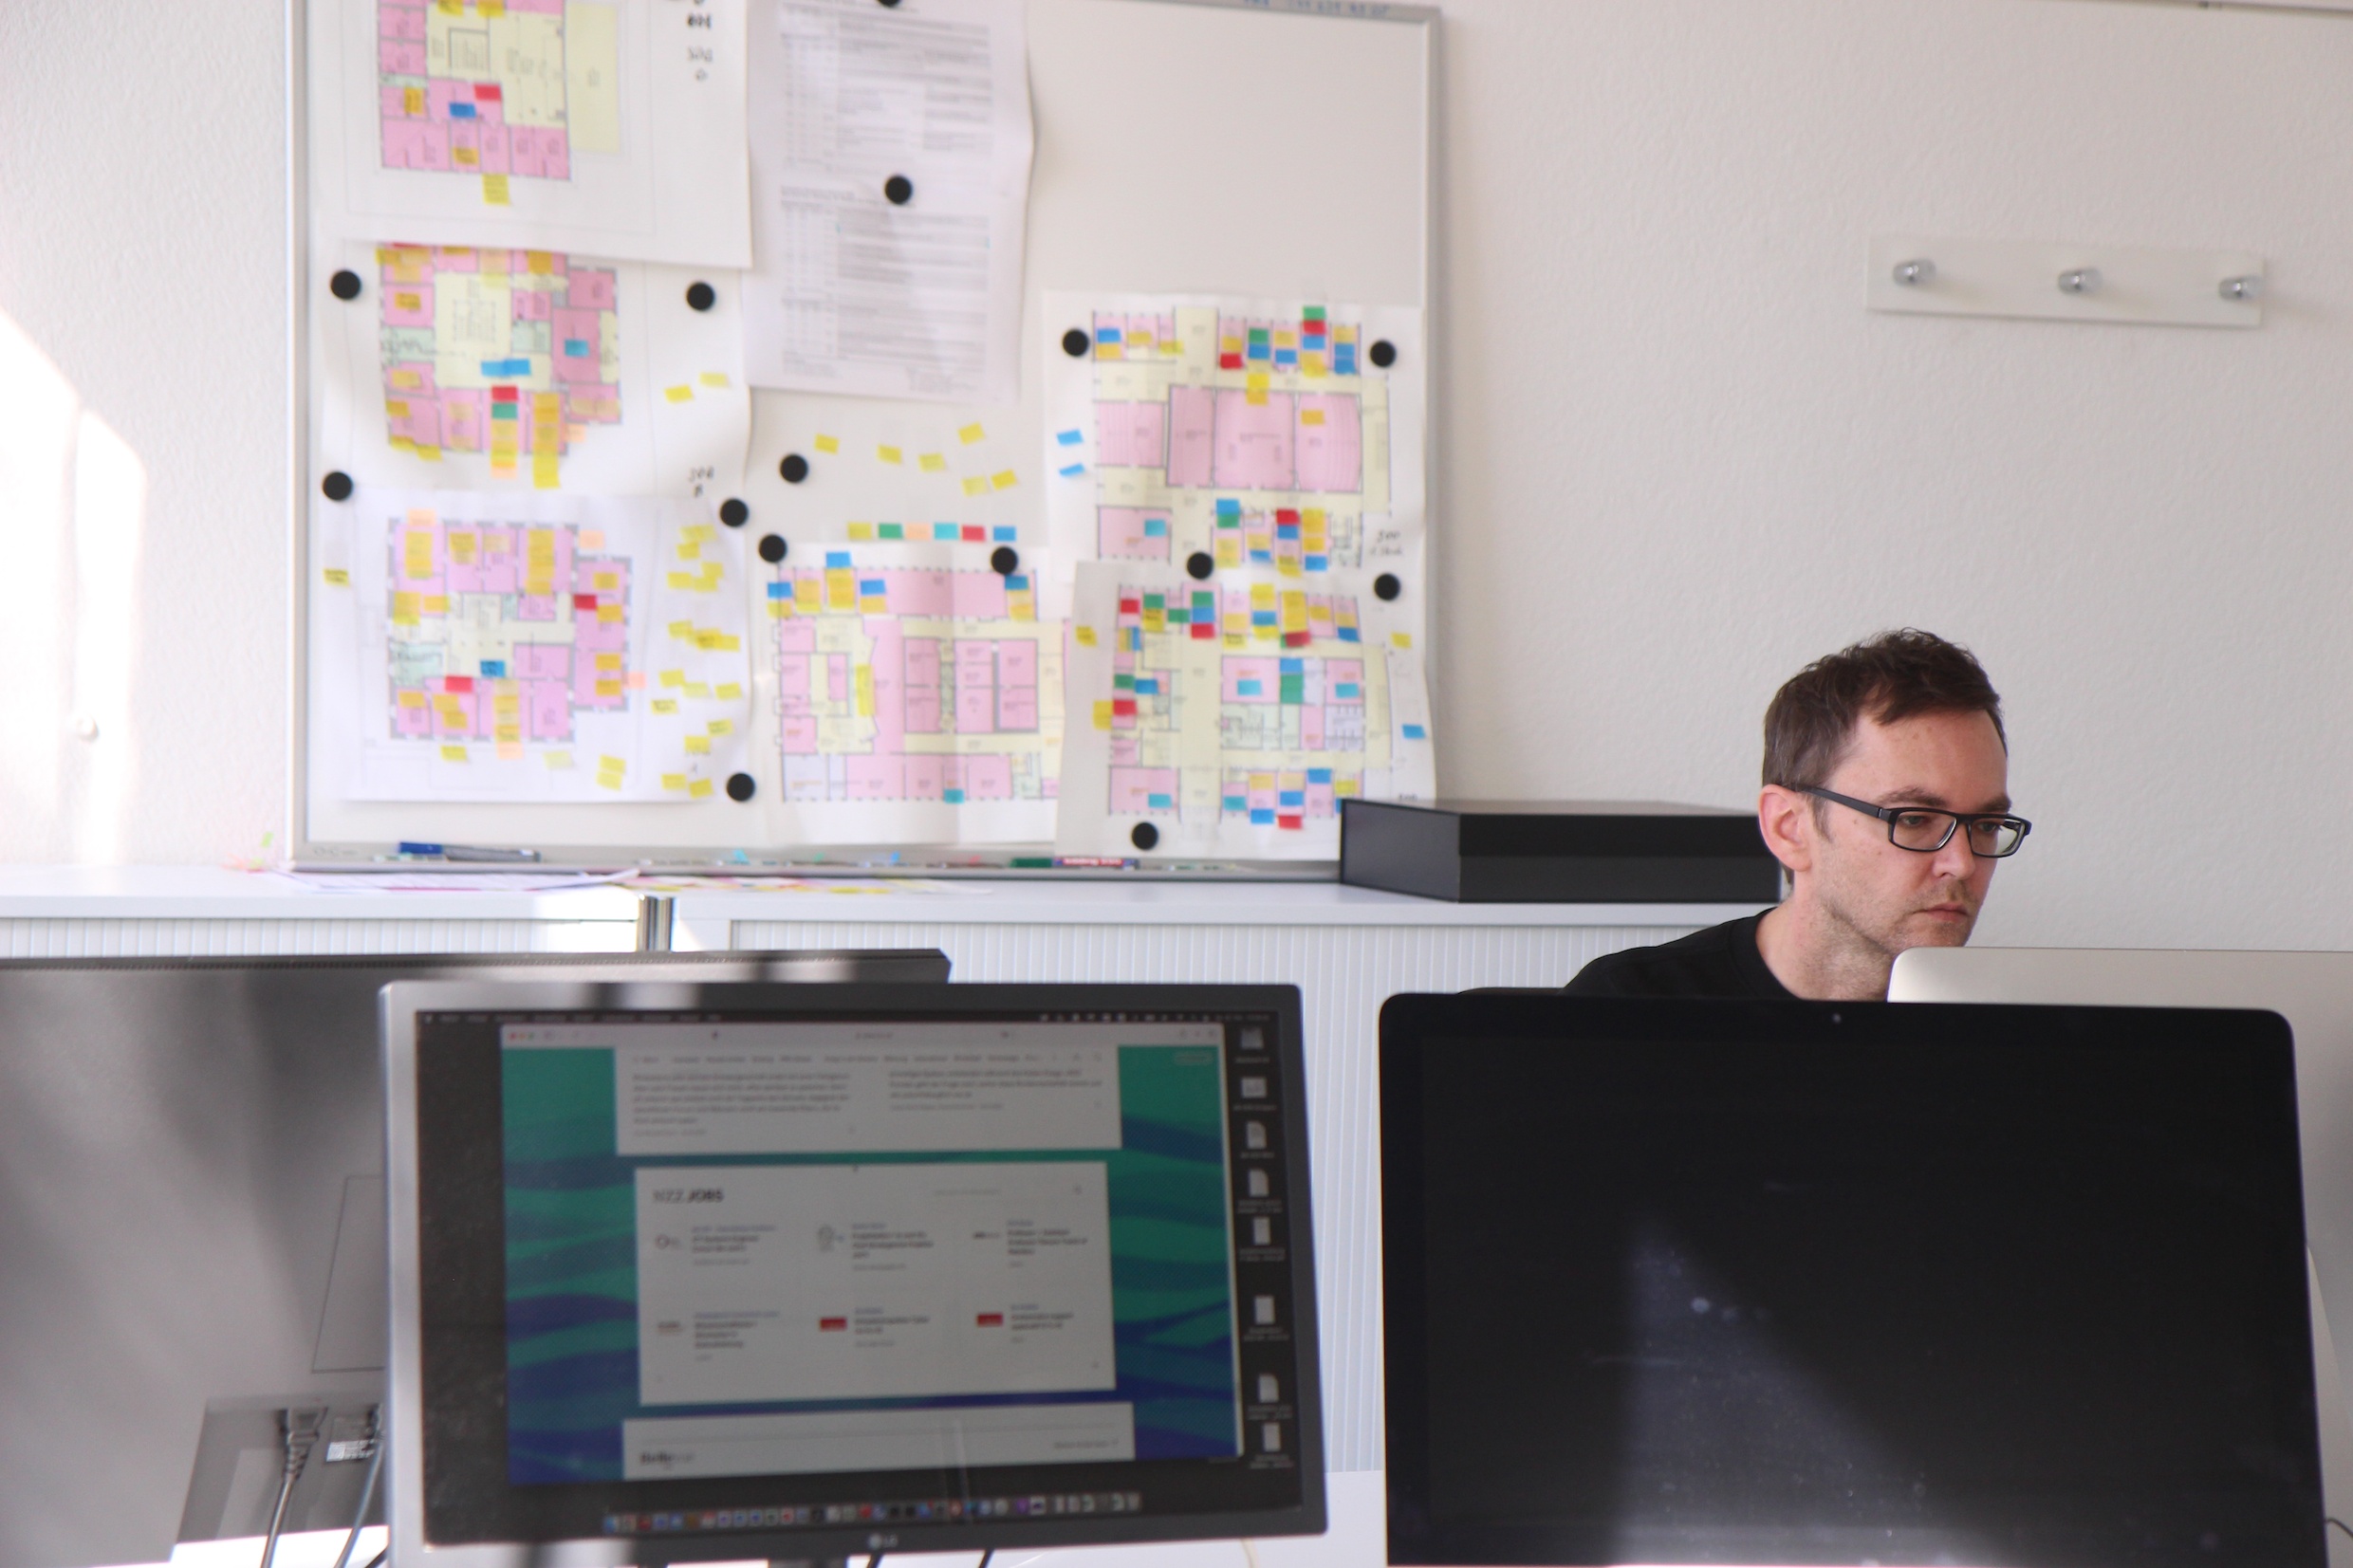 Das Bild zeigt einen Mitarbeiter der IT am Deutschen Seminar in seinem Büro, er sitzt hinter einem Bildschirm. Die untere Hälfte des Bilds ist voll von Bildschirmen, im Hintergrund hängt ein Gebäudeplan.